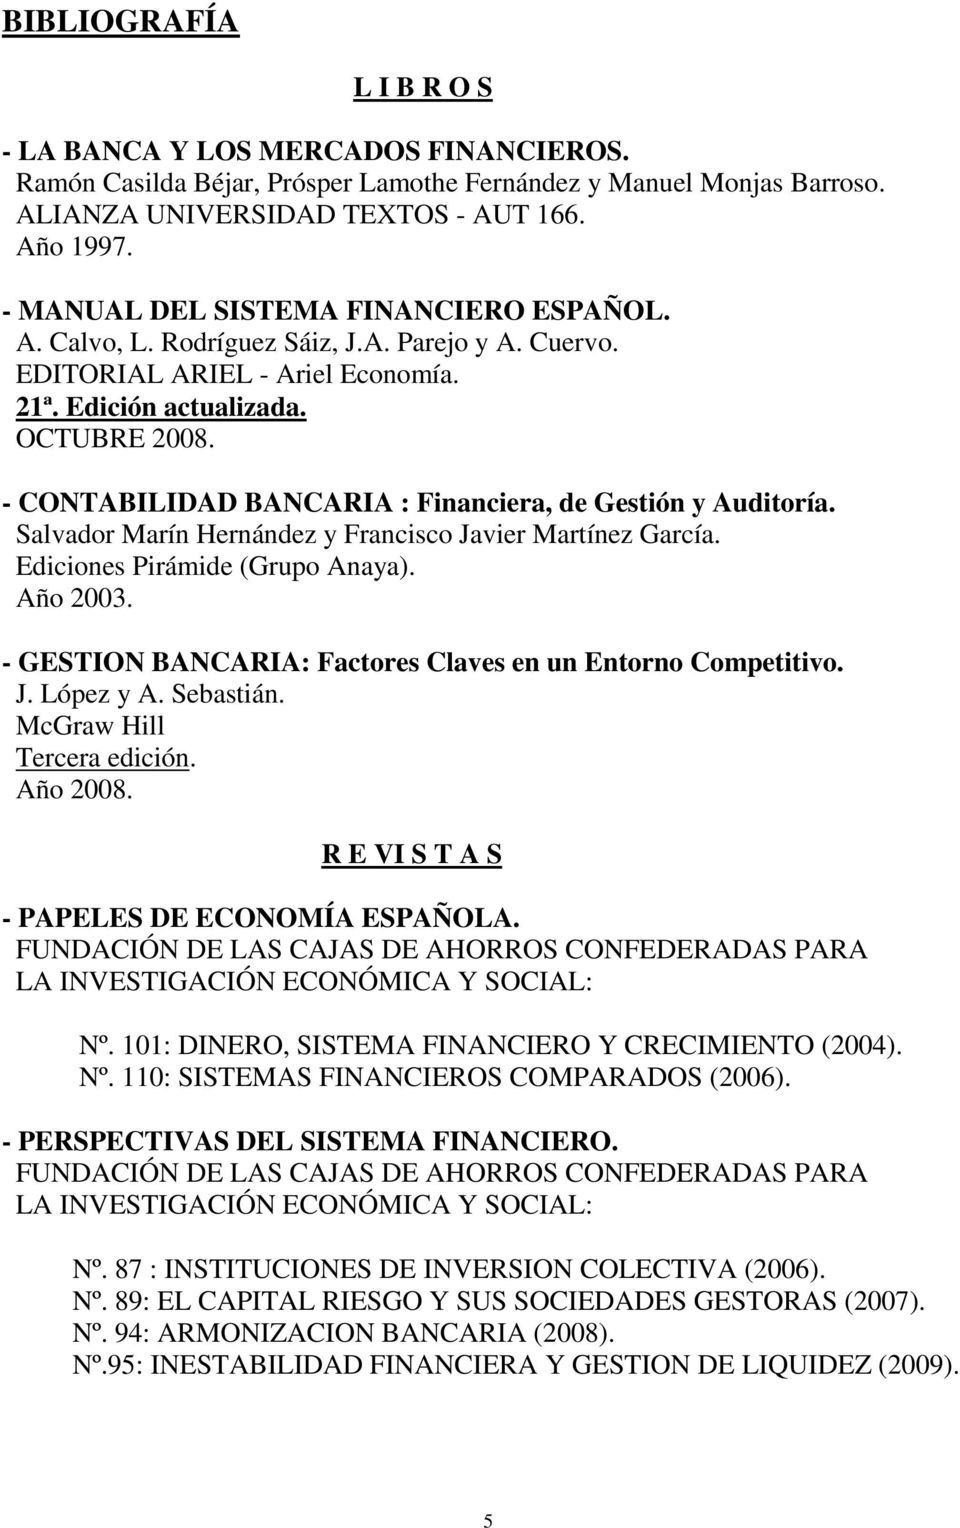 - CONTABILIDAD BANCARIA : Financiera, de Gestión y Auditoría. Salvador Marín Hernández y Francisco Javier Martínez García. Ediciones Pirámide (Grupo Anaya). Año 2003.